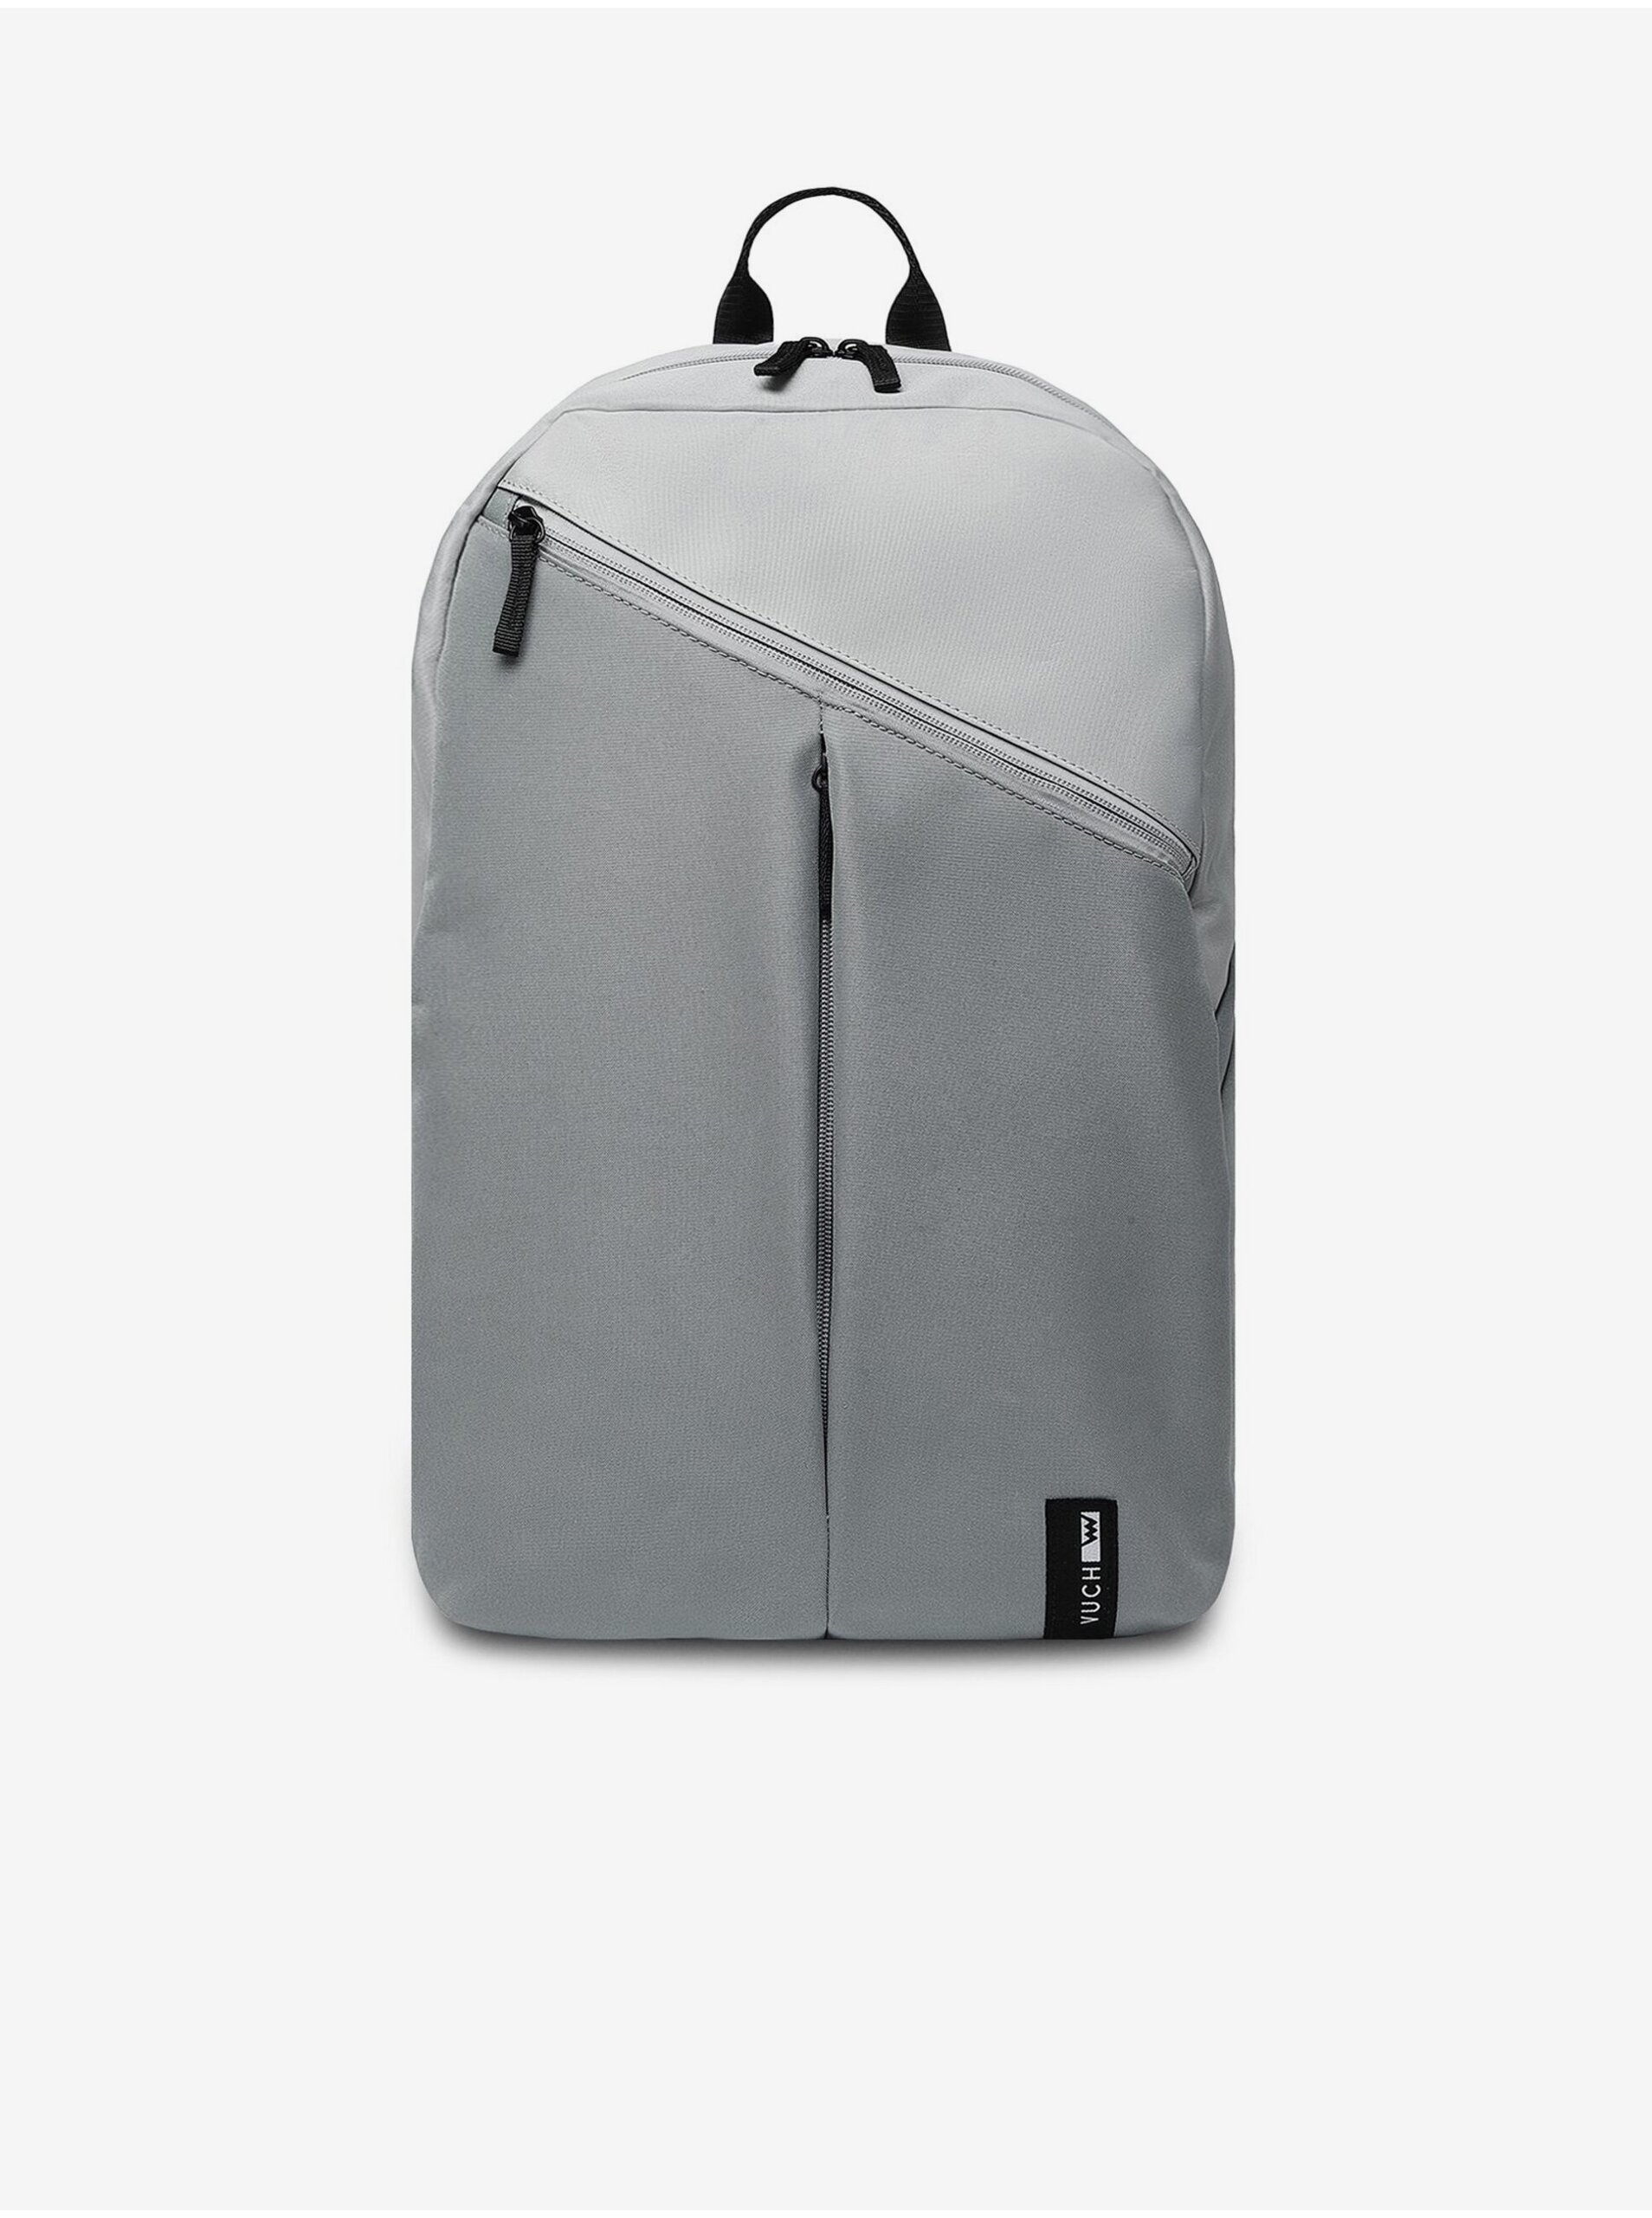 E-shop Světle šedý pánský batoh 27 l VUCH Calypso Grey